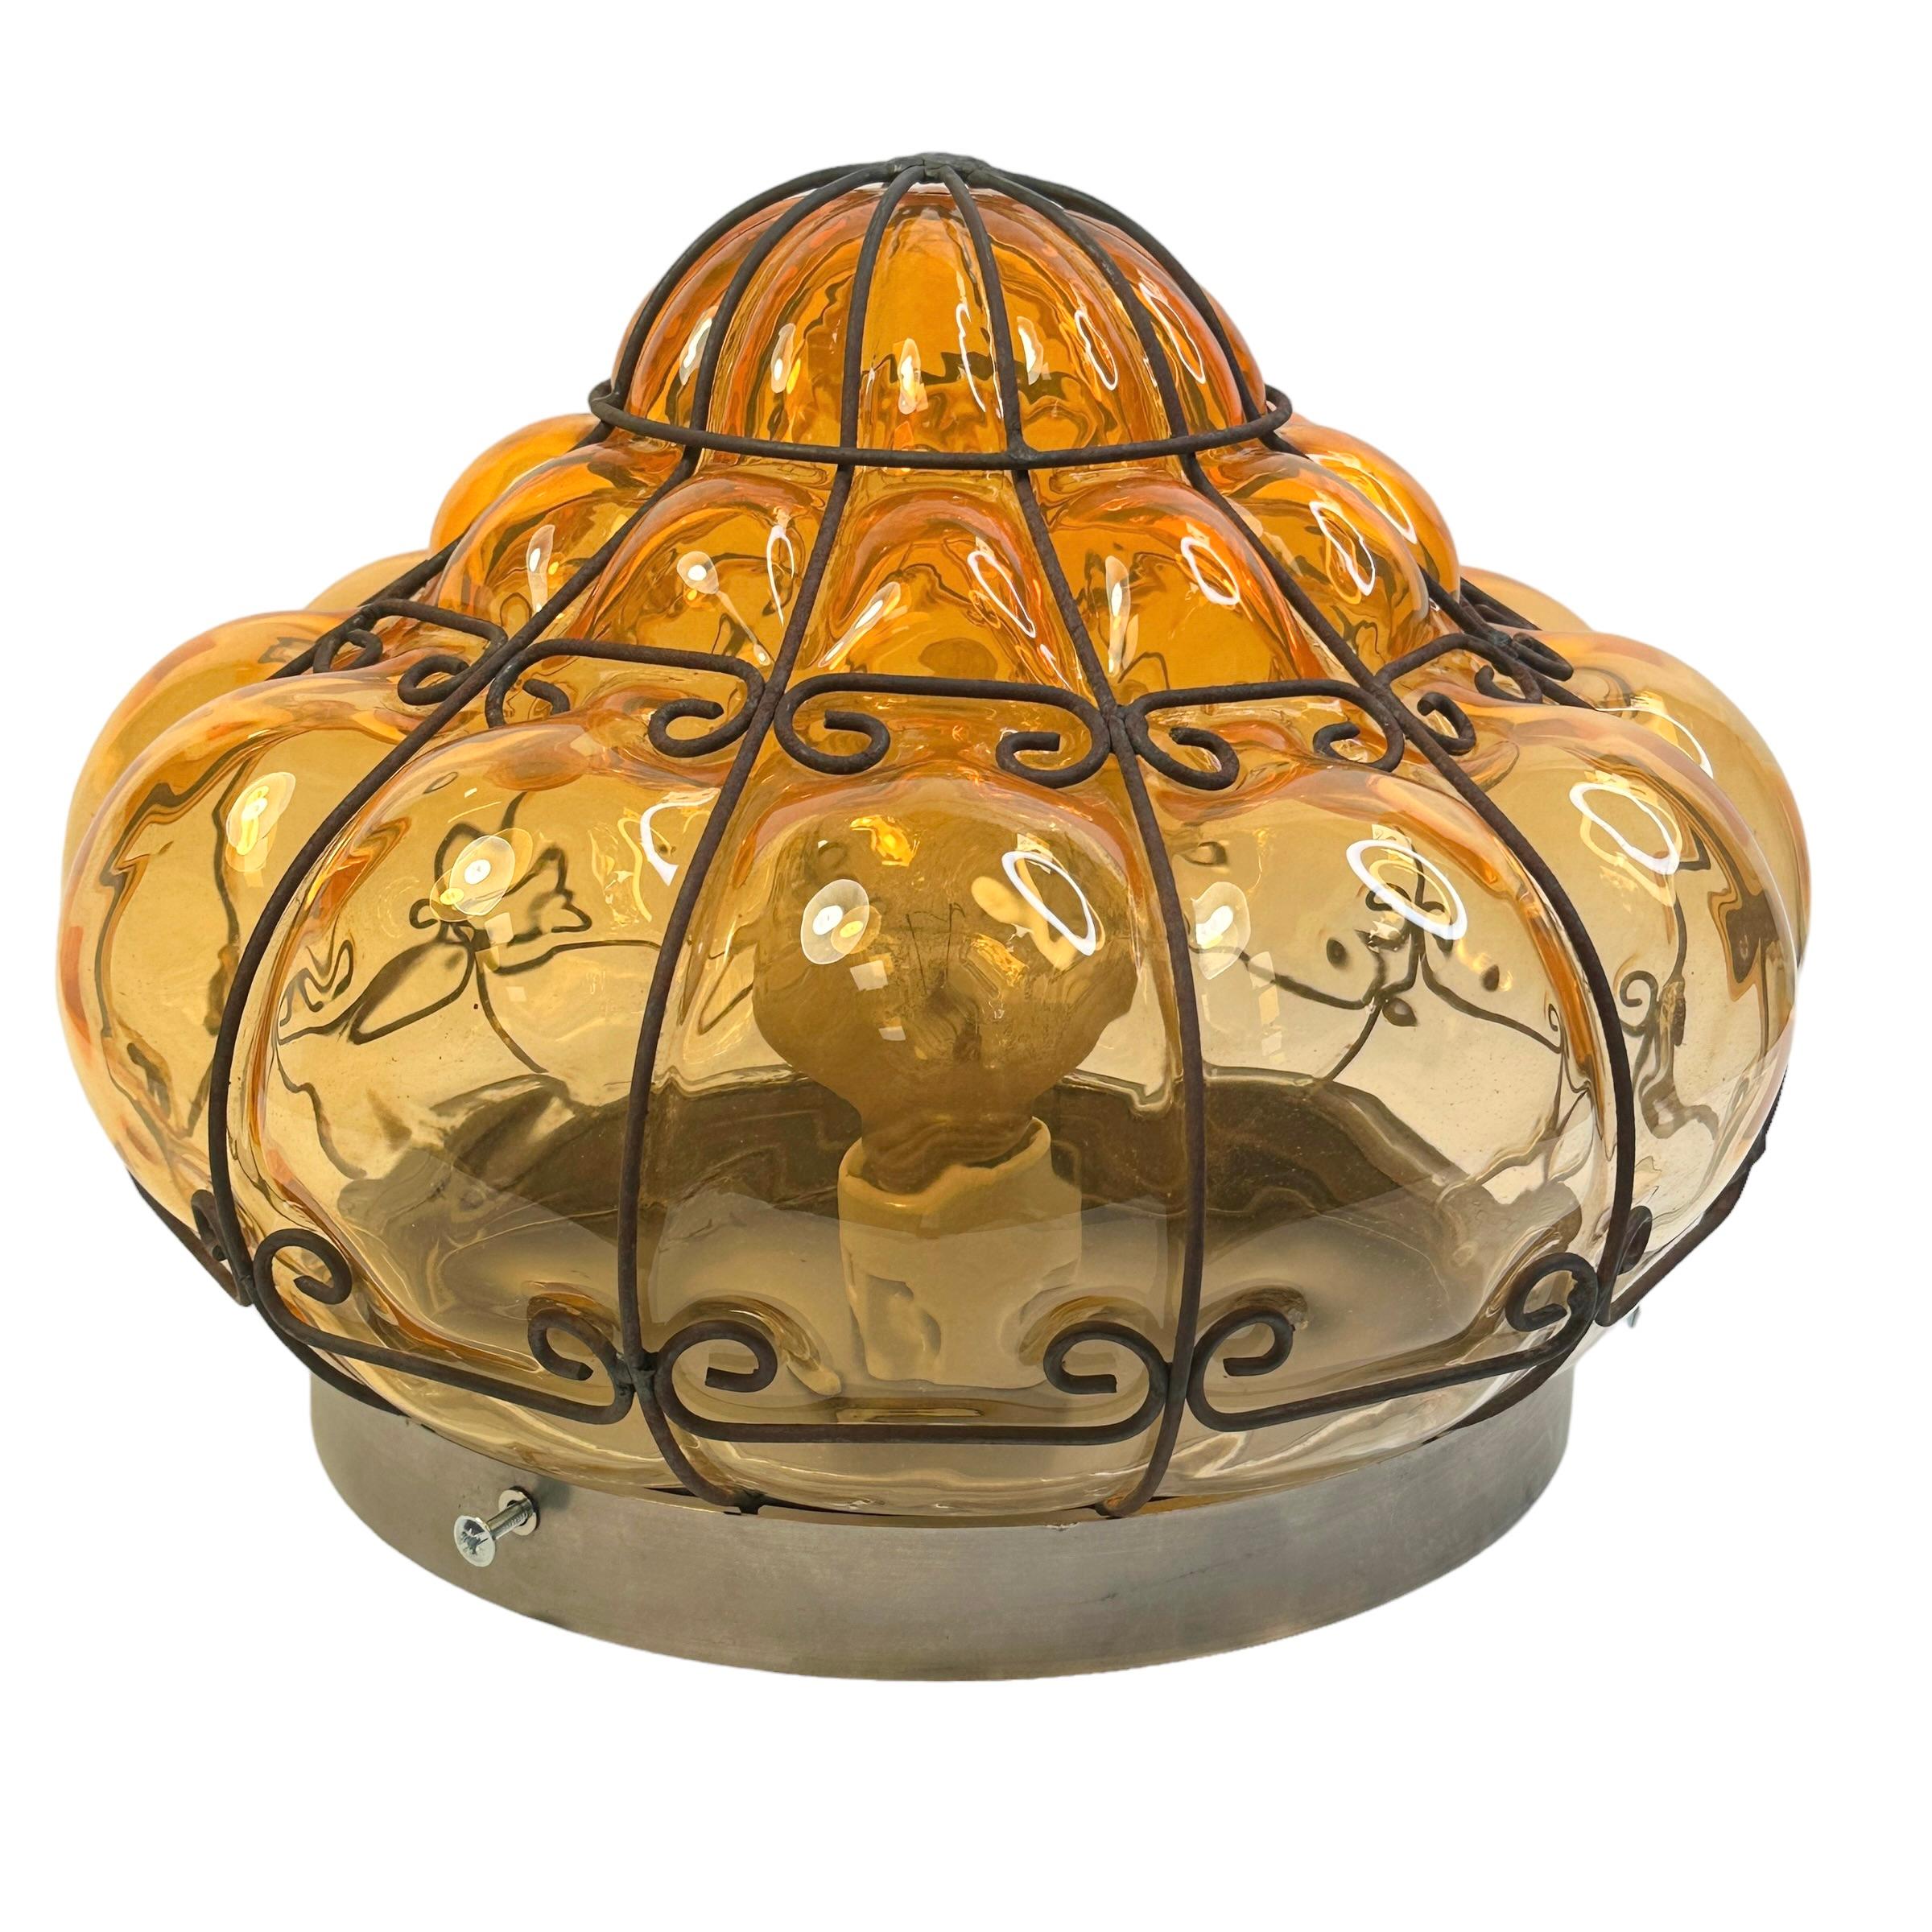 Un fabuleux verre vénitien orange soufflé à la main dans une monture en fer. Il peut également être utilisé comme applique murale car le globe est maintenu fermement au luminaire à l'aide de vis. Il est dans un état vintage fabuleux et dispose d'une